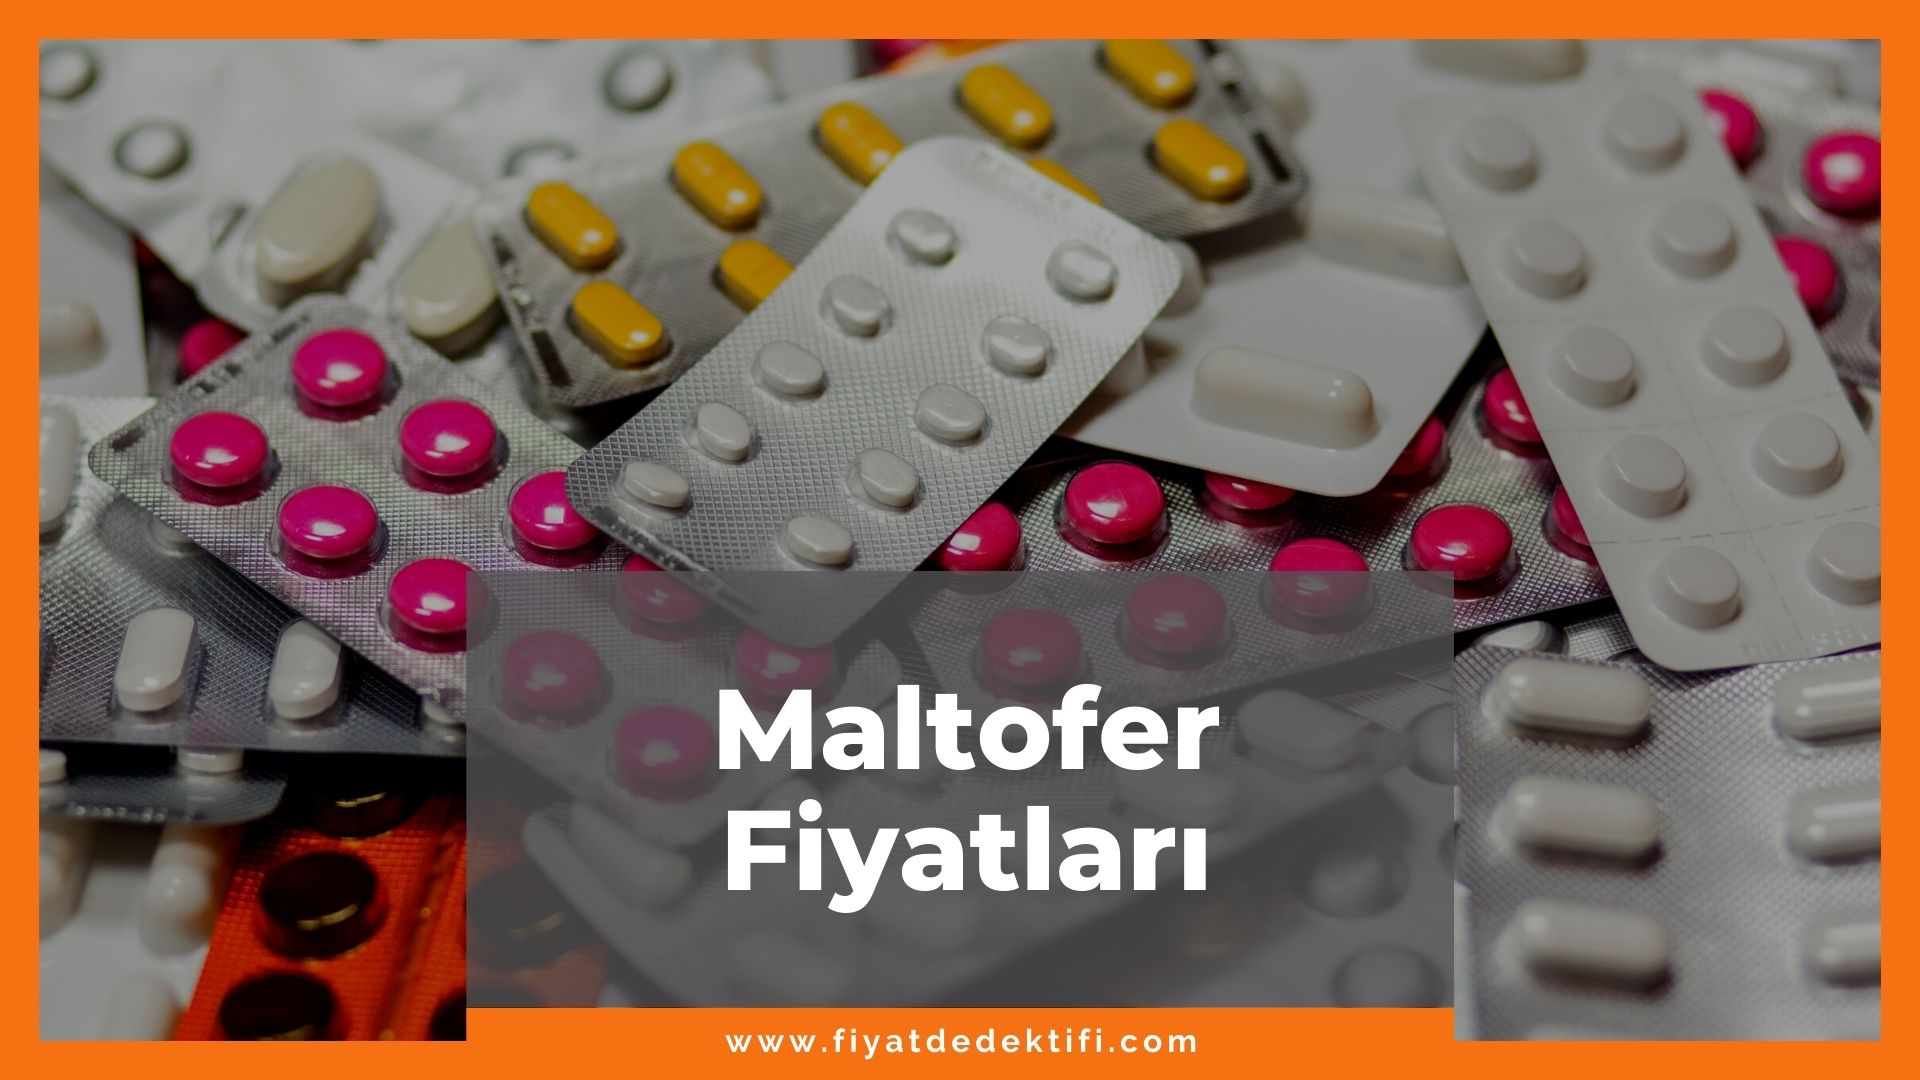 Maltofer Fiyat 2021, Maltofer Fiyatı, Maltofer Fol Fiyatı, maltofer zamlandı mı, maltofer zamlı fiyatı ne kadar kaç tl oldu